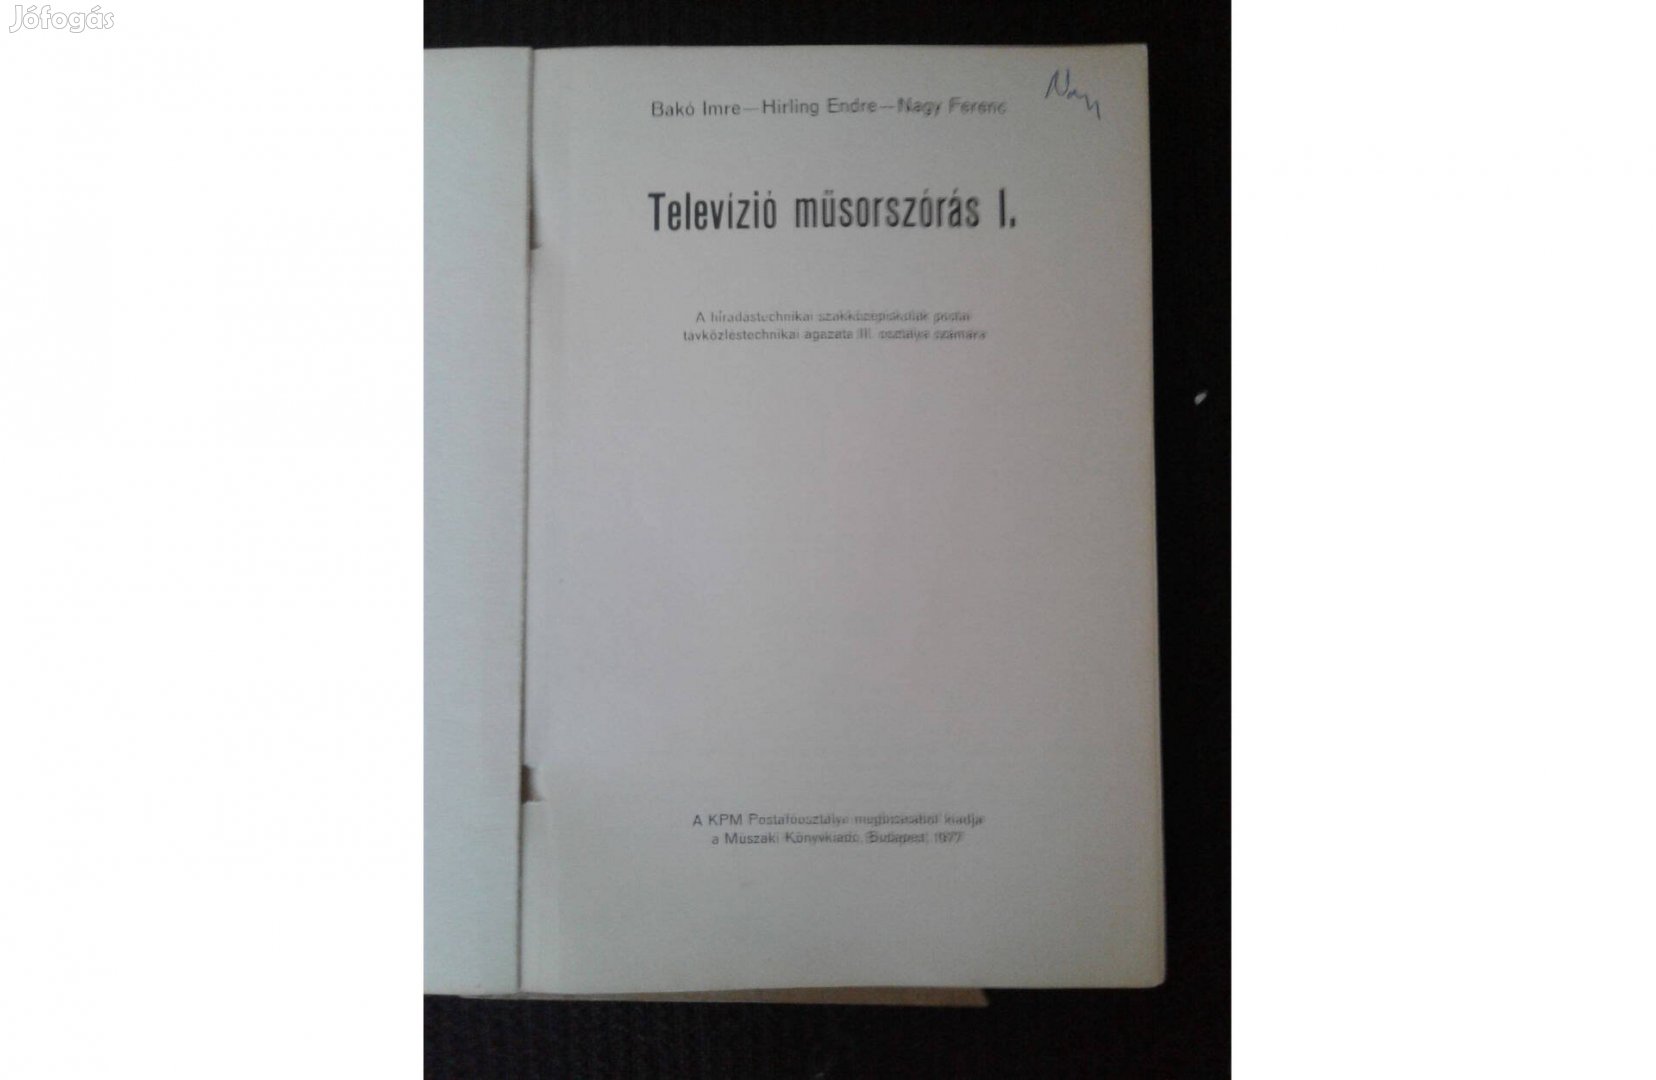 Televízió műsorszórás I. - 2500 kötetes gyűjteményből